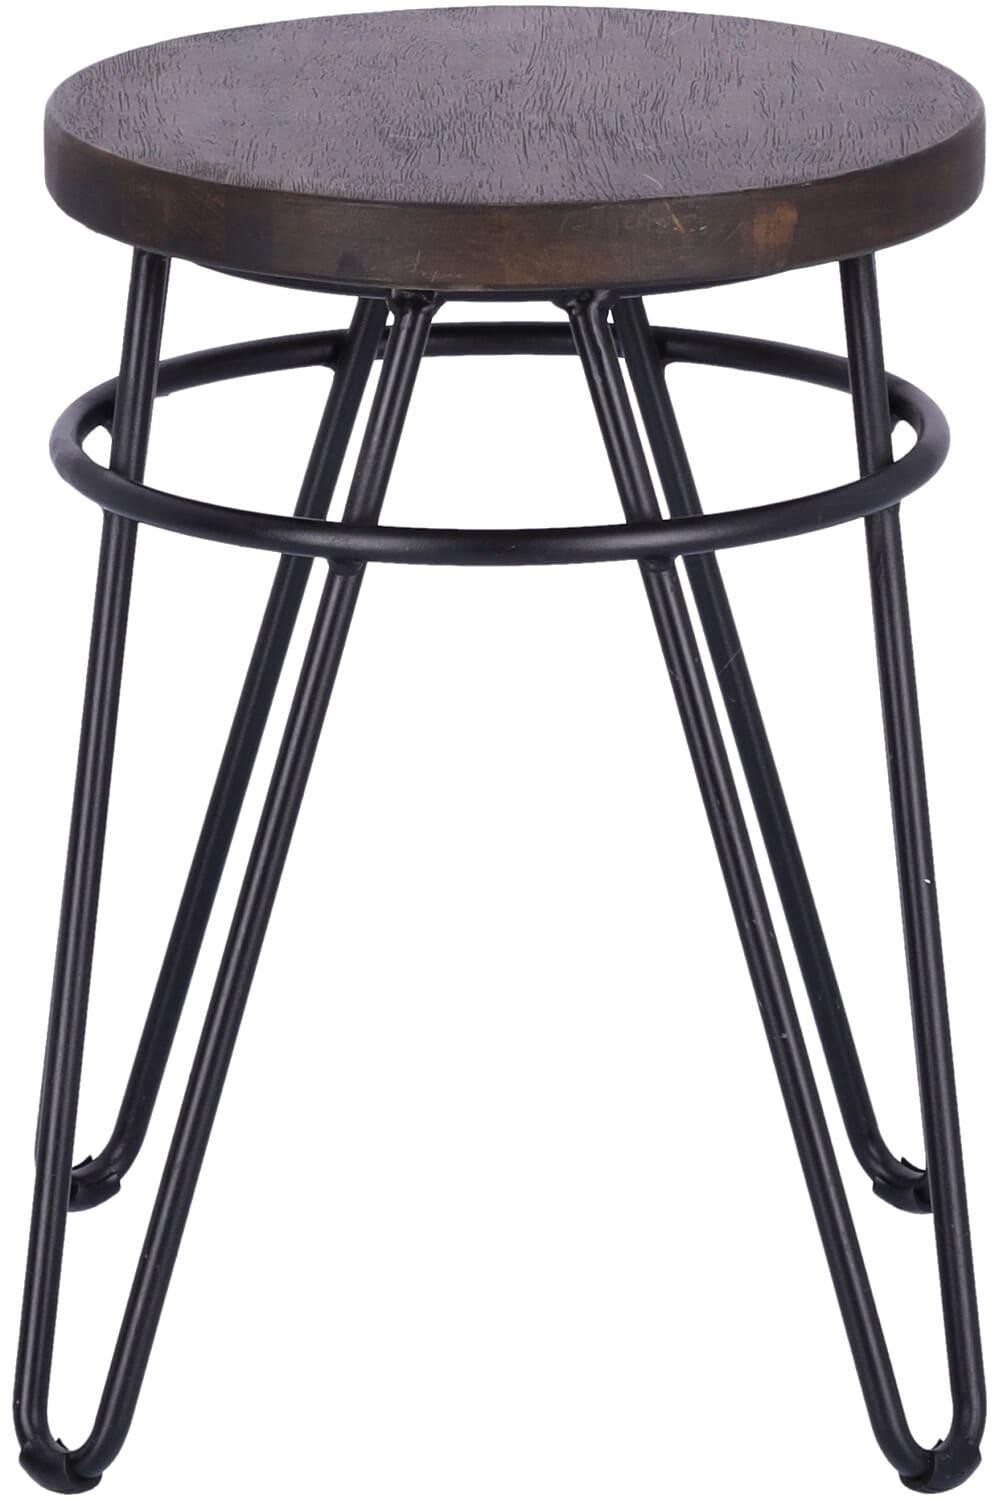 Abbildung stool Yago Vorderansicht